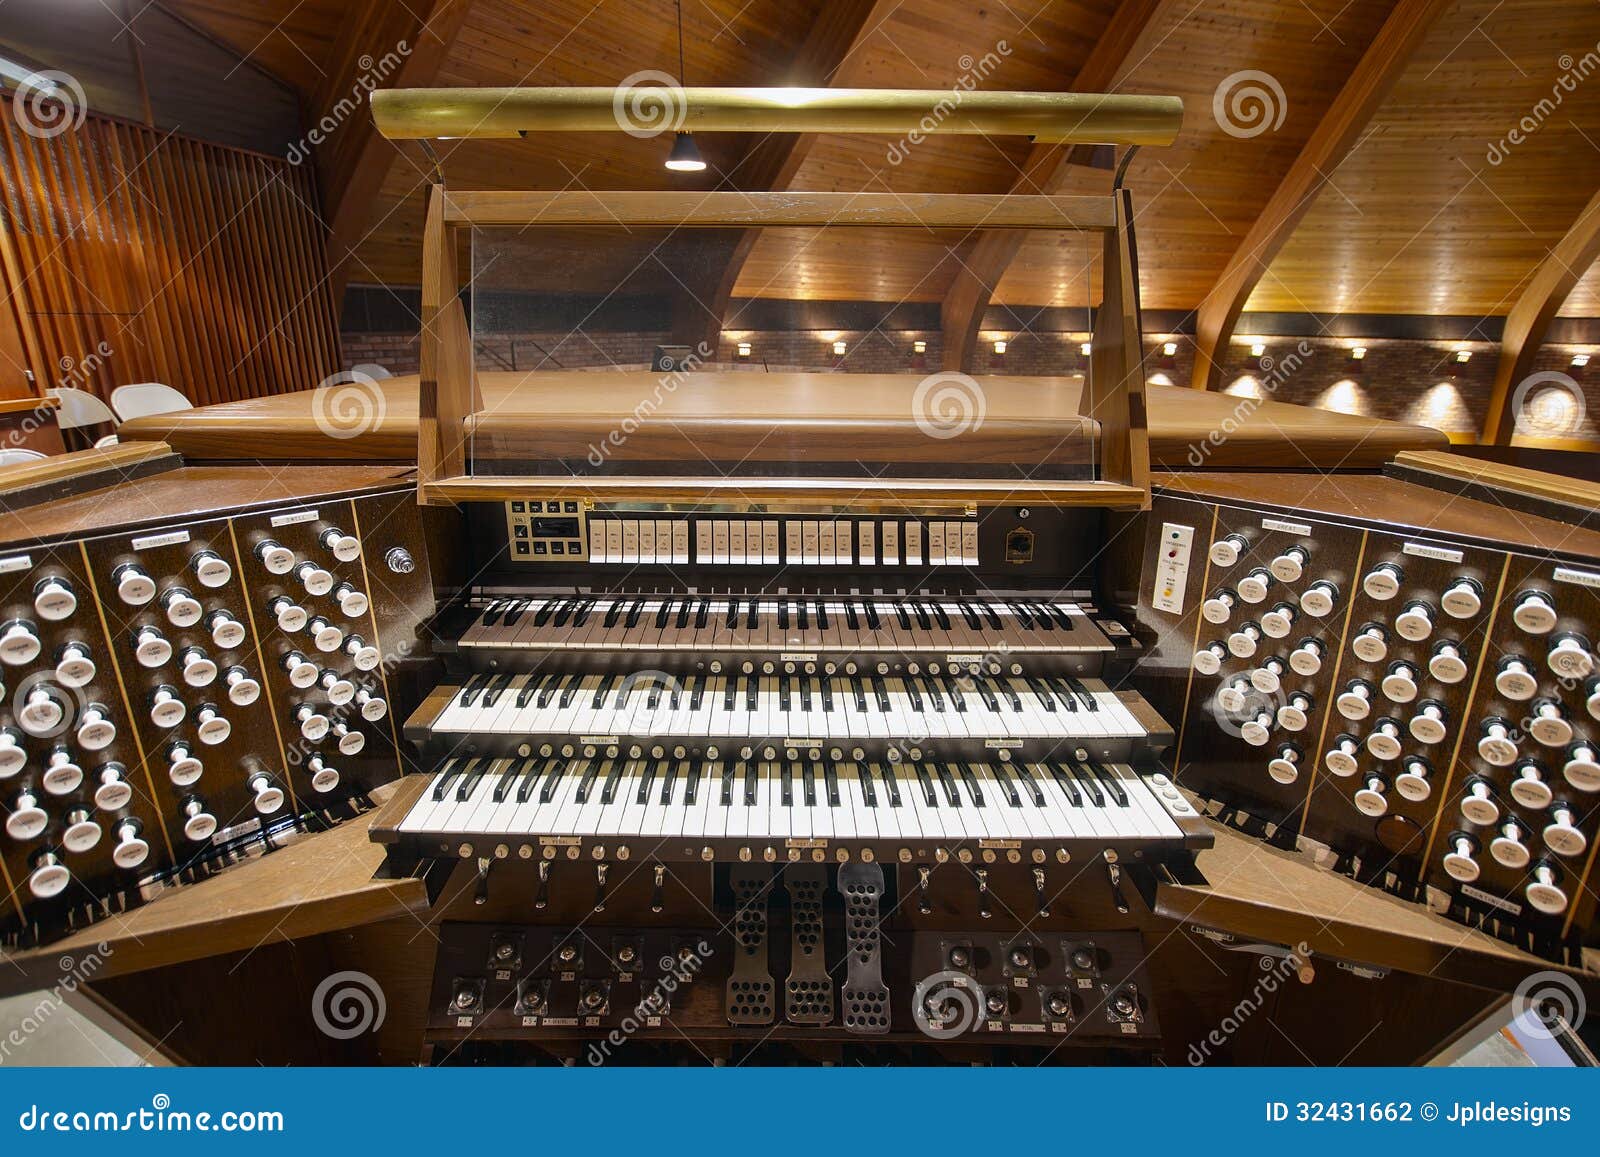 free clip art church organ - photo #37